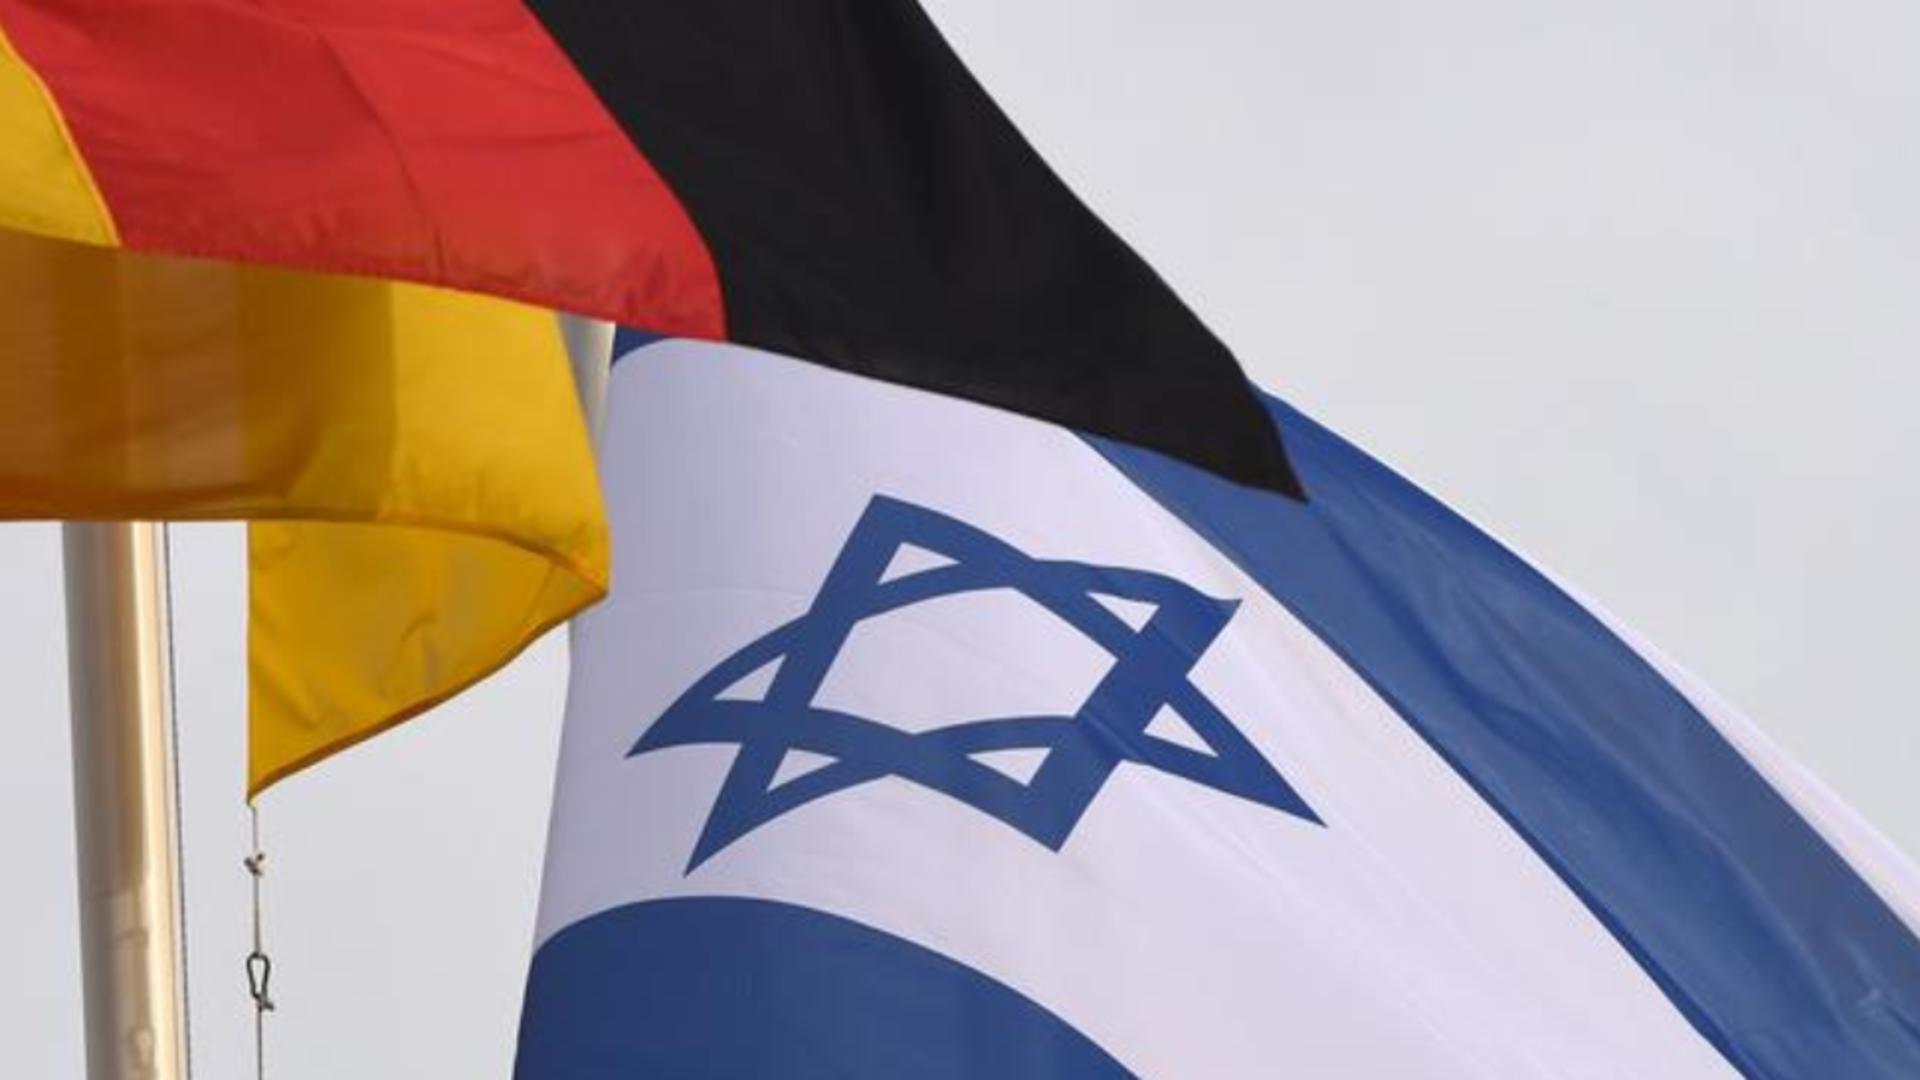 Decizie controversată în Germania pentru naturalizare - Solicitare legată de Israel la acordarea cetățeniei, după atacul Hamas din 7 octombrie